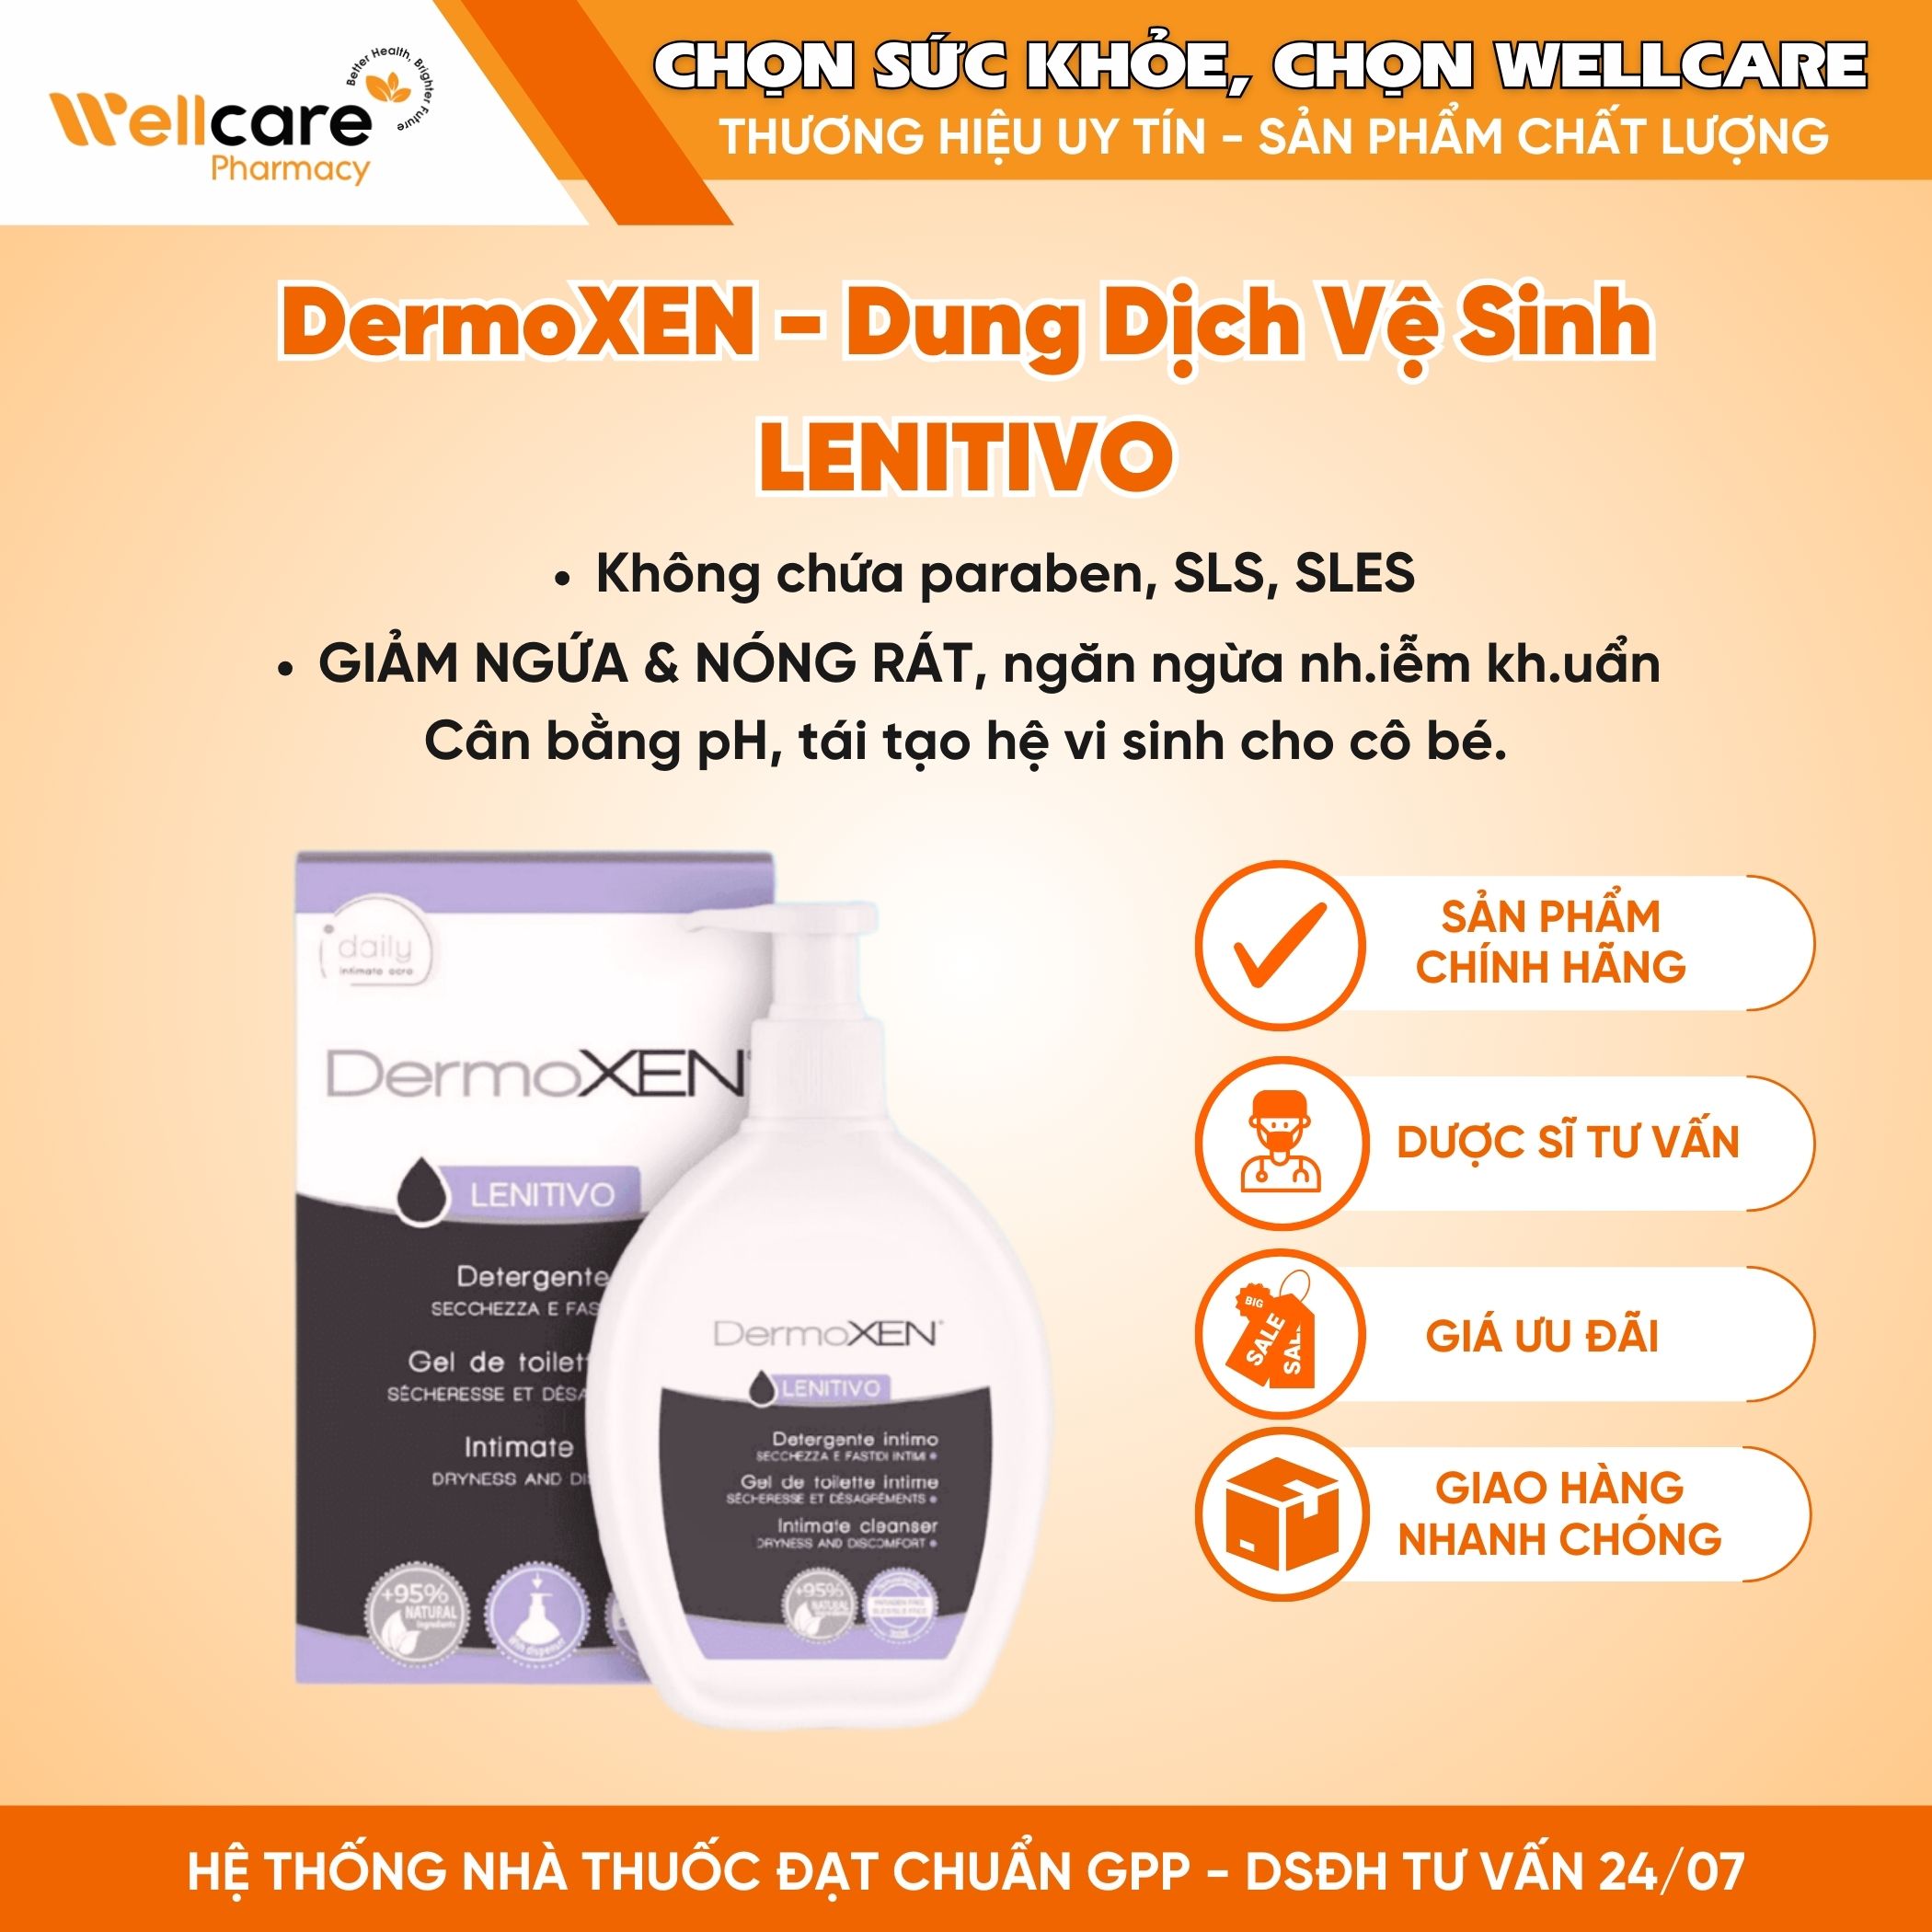 DermoXEN LENITIVO – Dung dịch vệ sinh giữ ẩm dành cho phụ nữ (Chai 200ml)